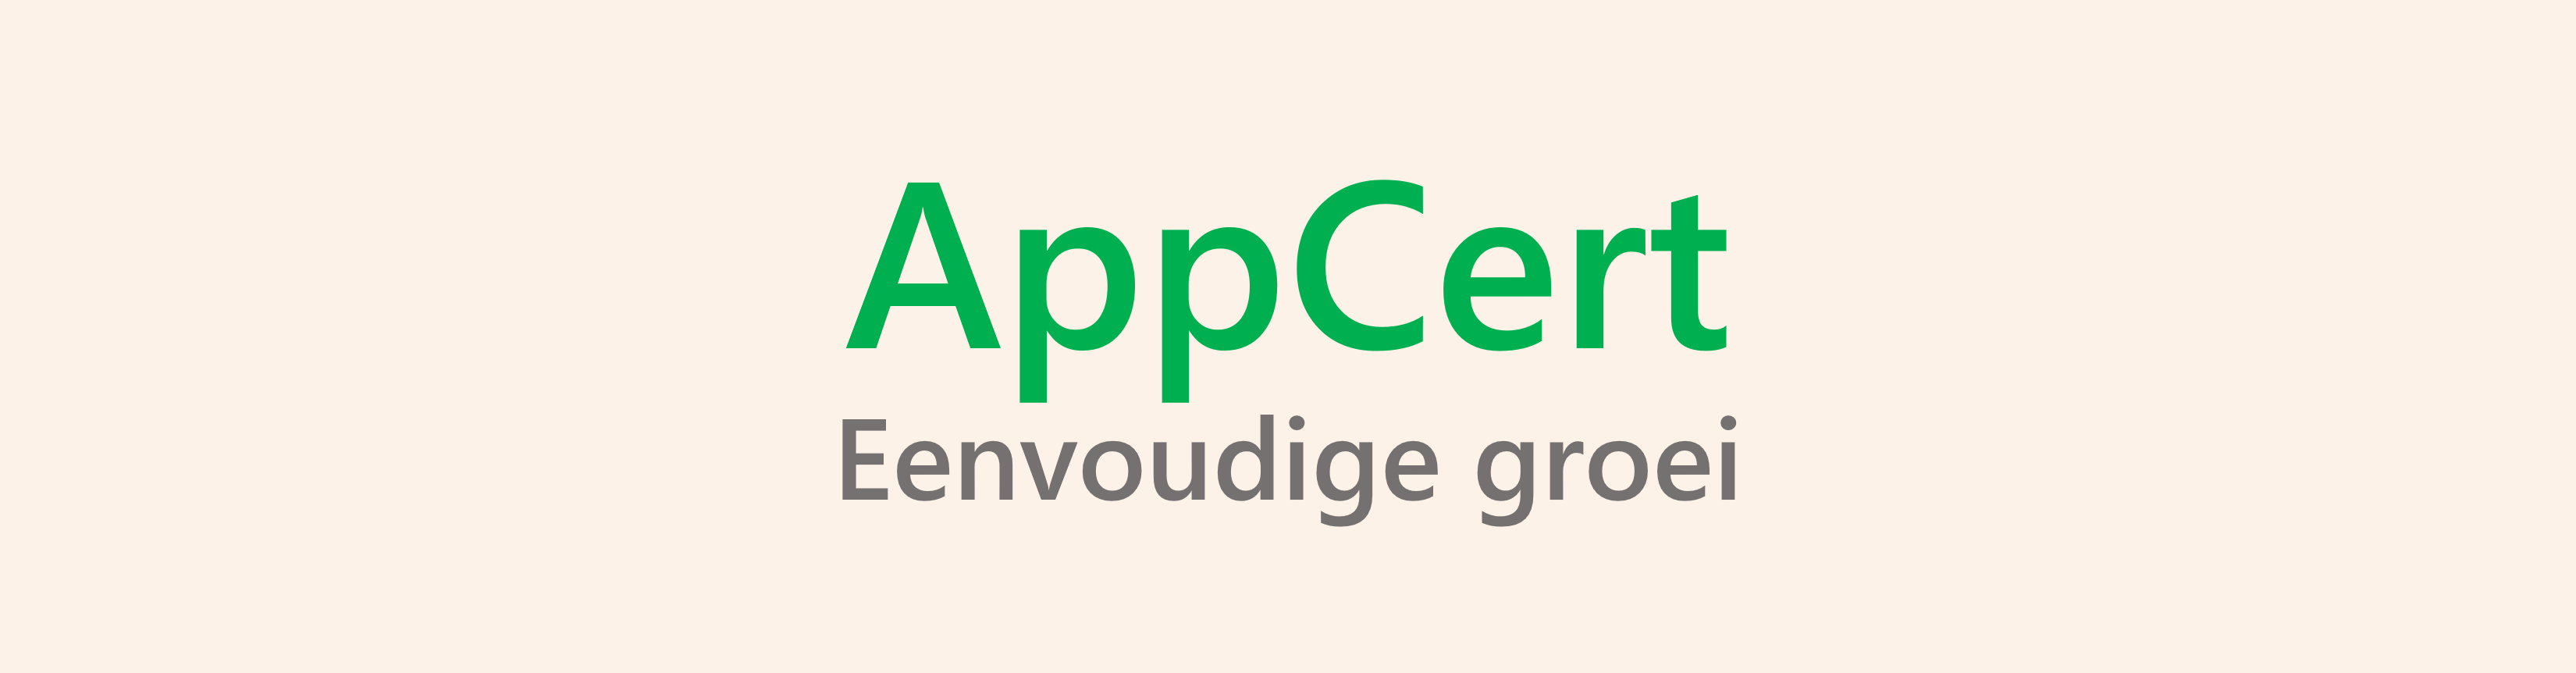 Logo AppCert